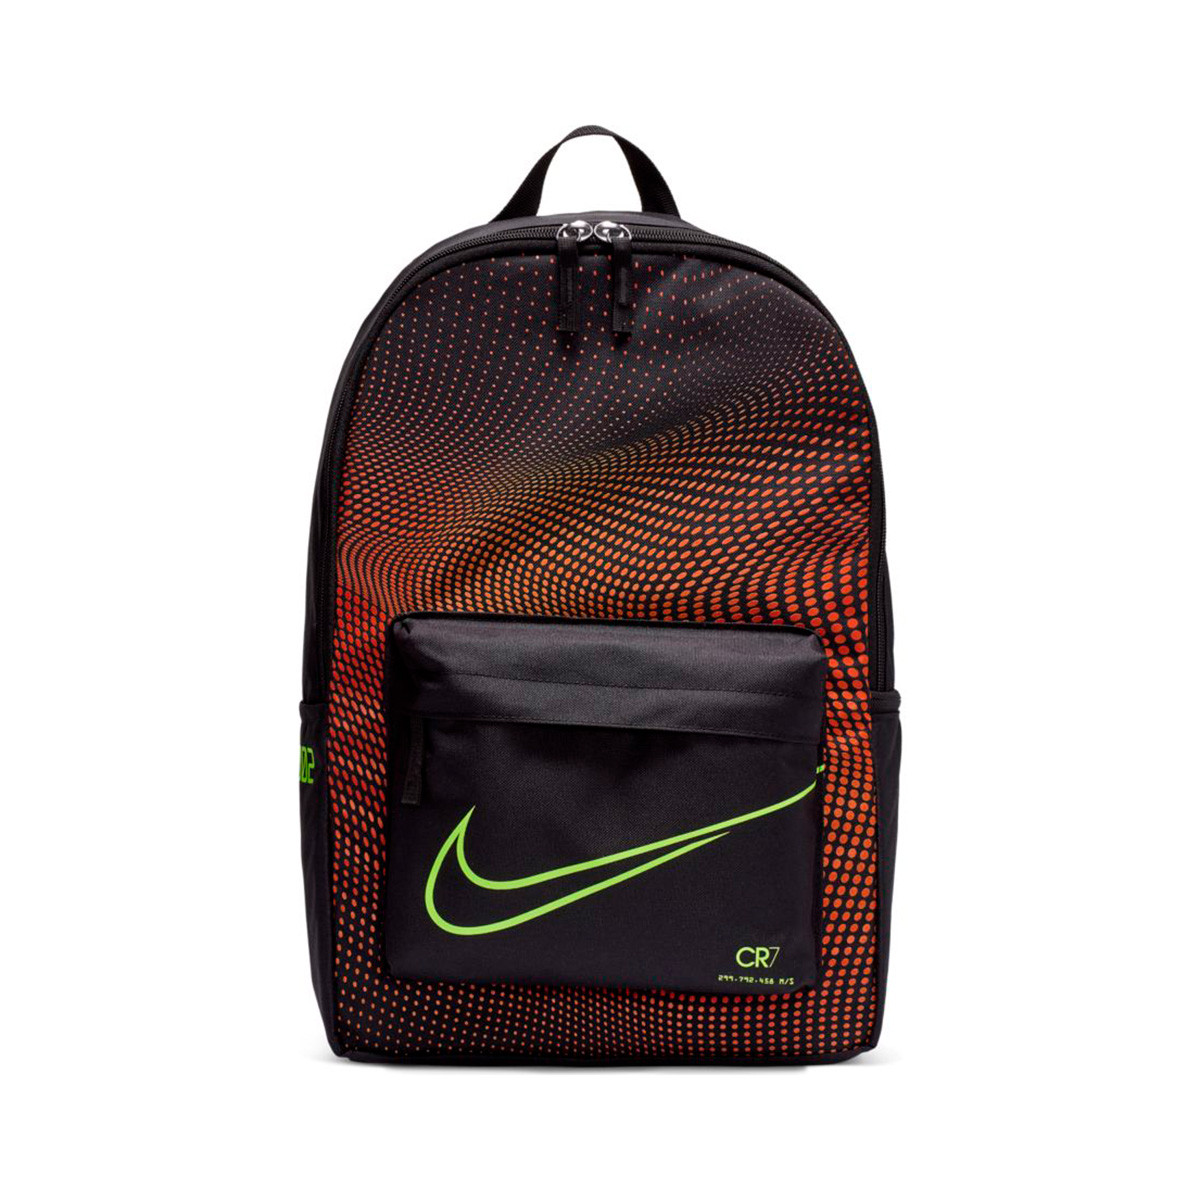 Backpack Nike Kids Mercurial CR7 Black 